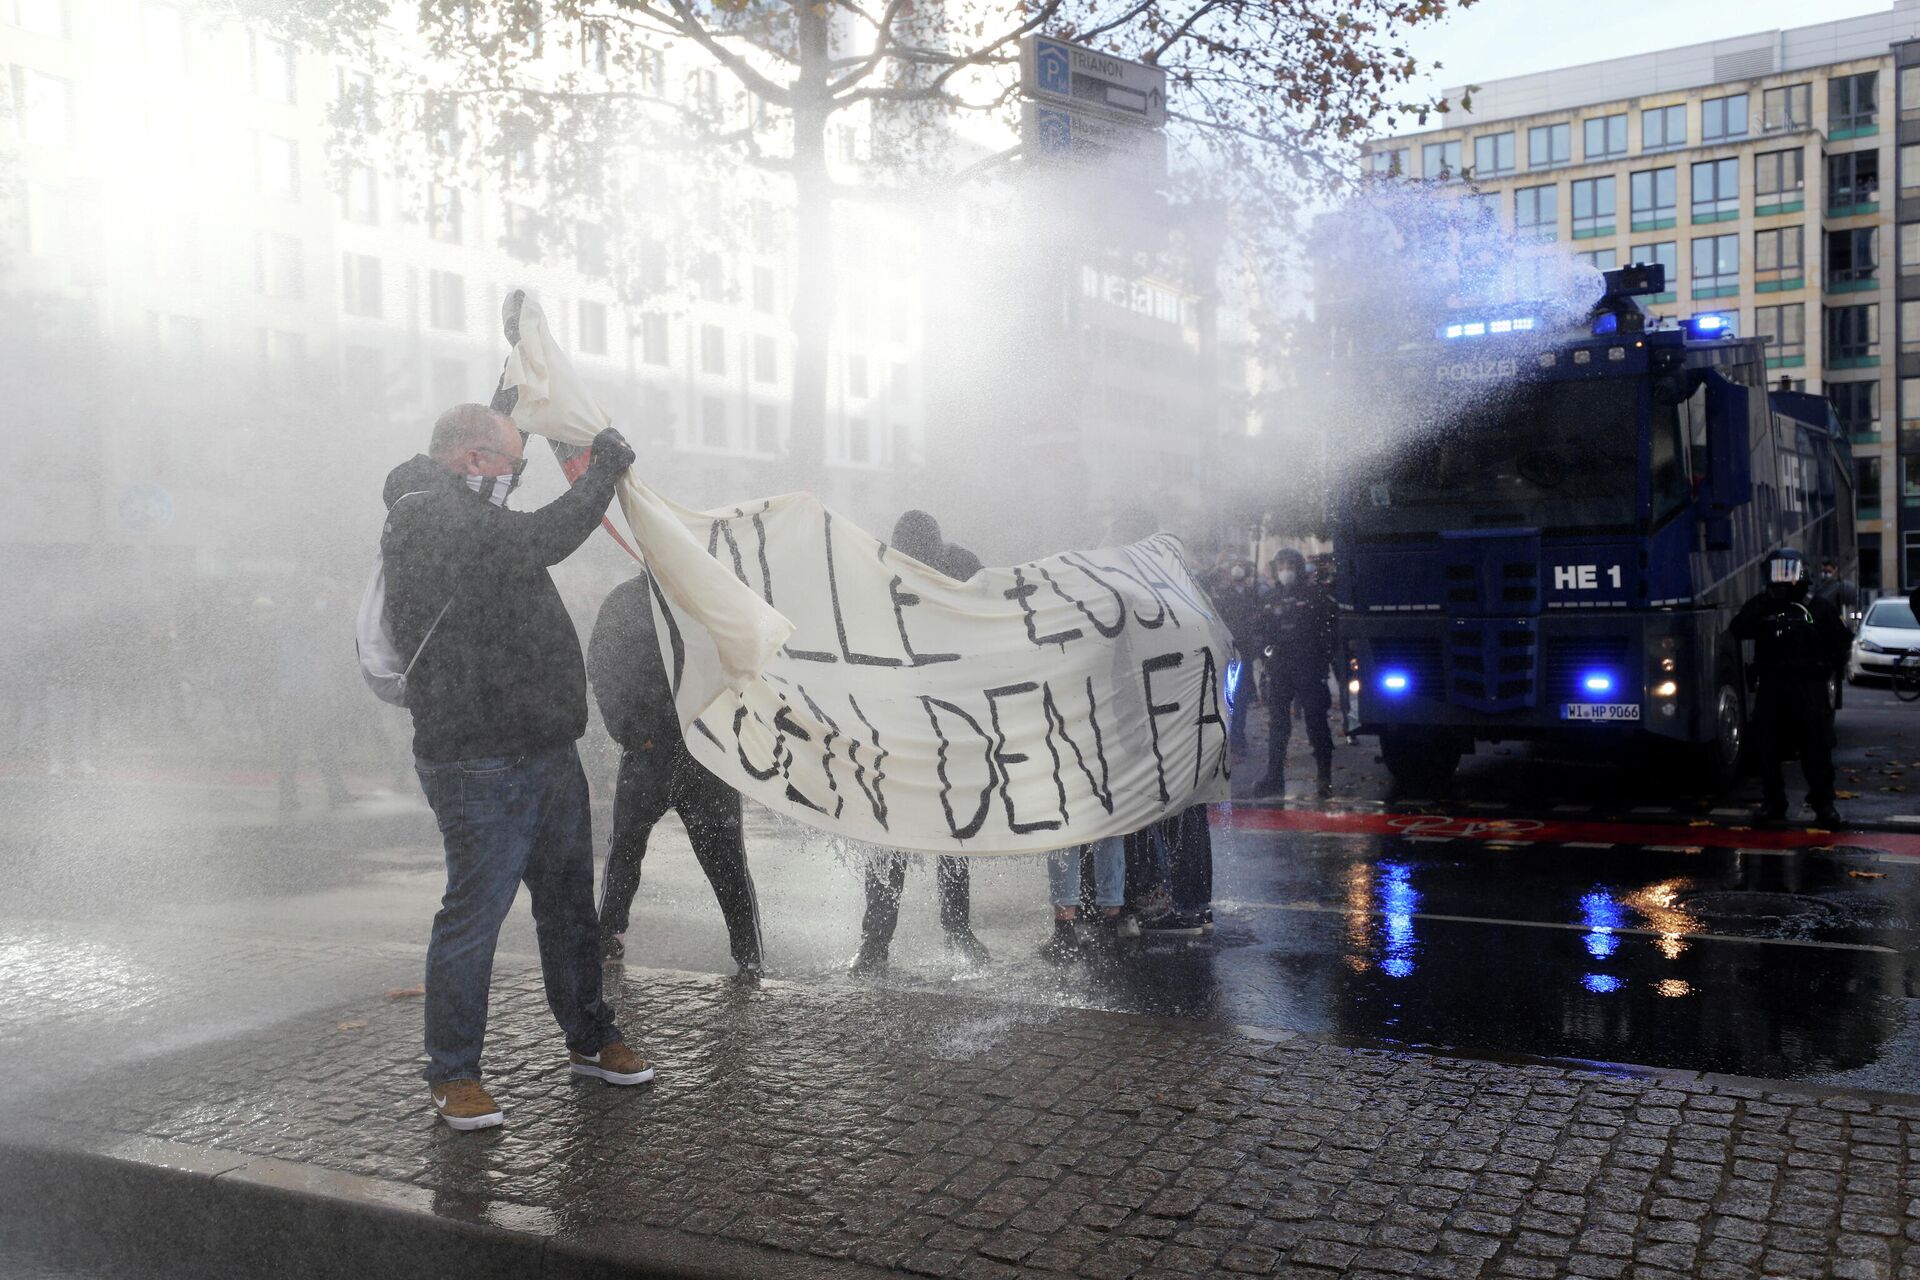 Полицейские используют водометы против участников акции протеста во Франкфурте, Германия - РИА Новости, 1920, 14.11.2020